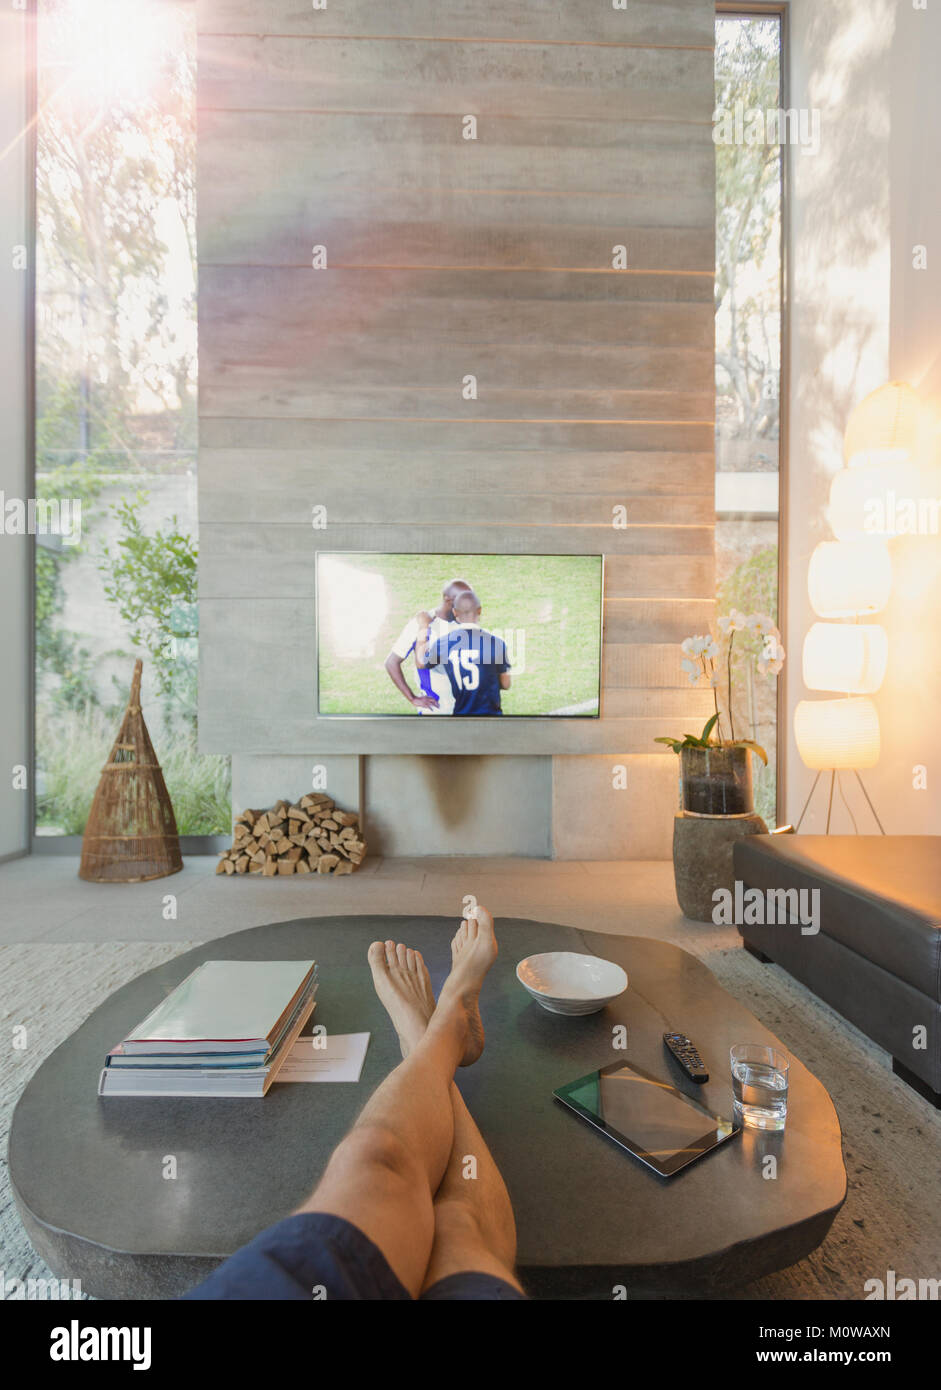 Point de vue personnel sur l'homme qui regarde le football à la télévision dans la salle de séjour Banque D'Images